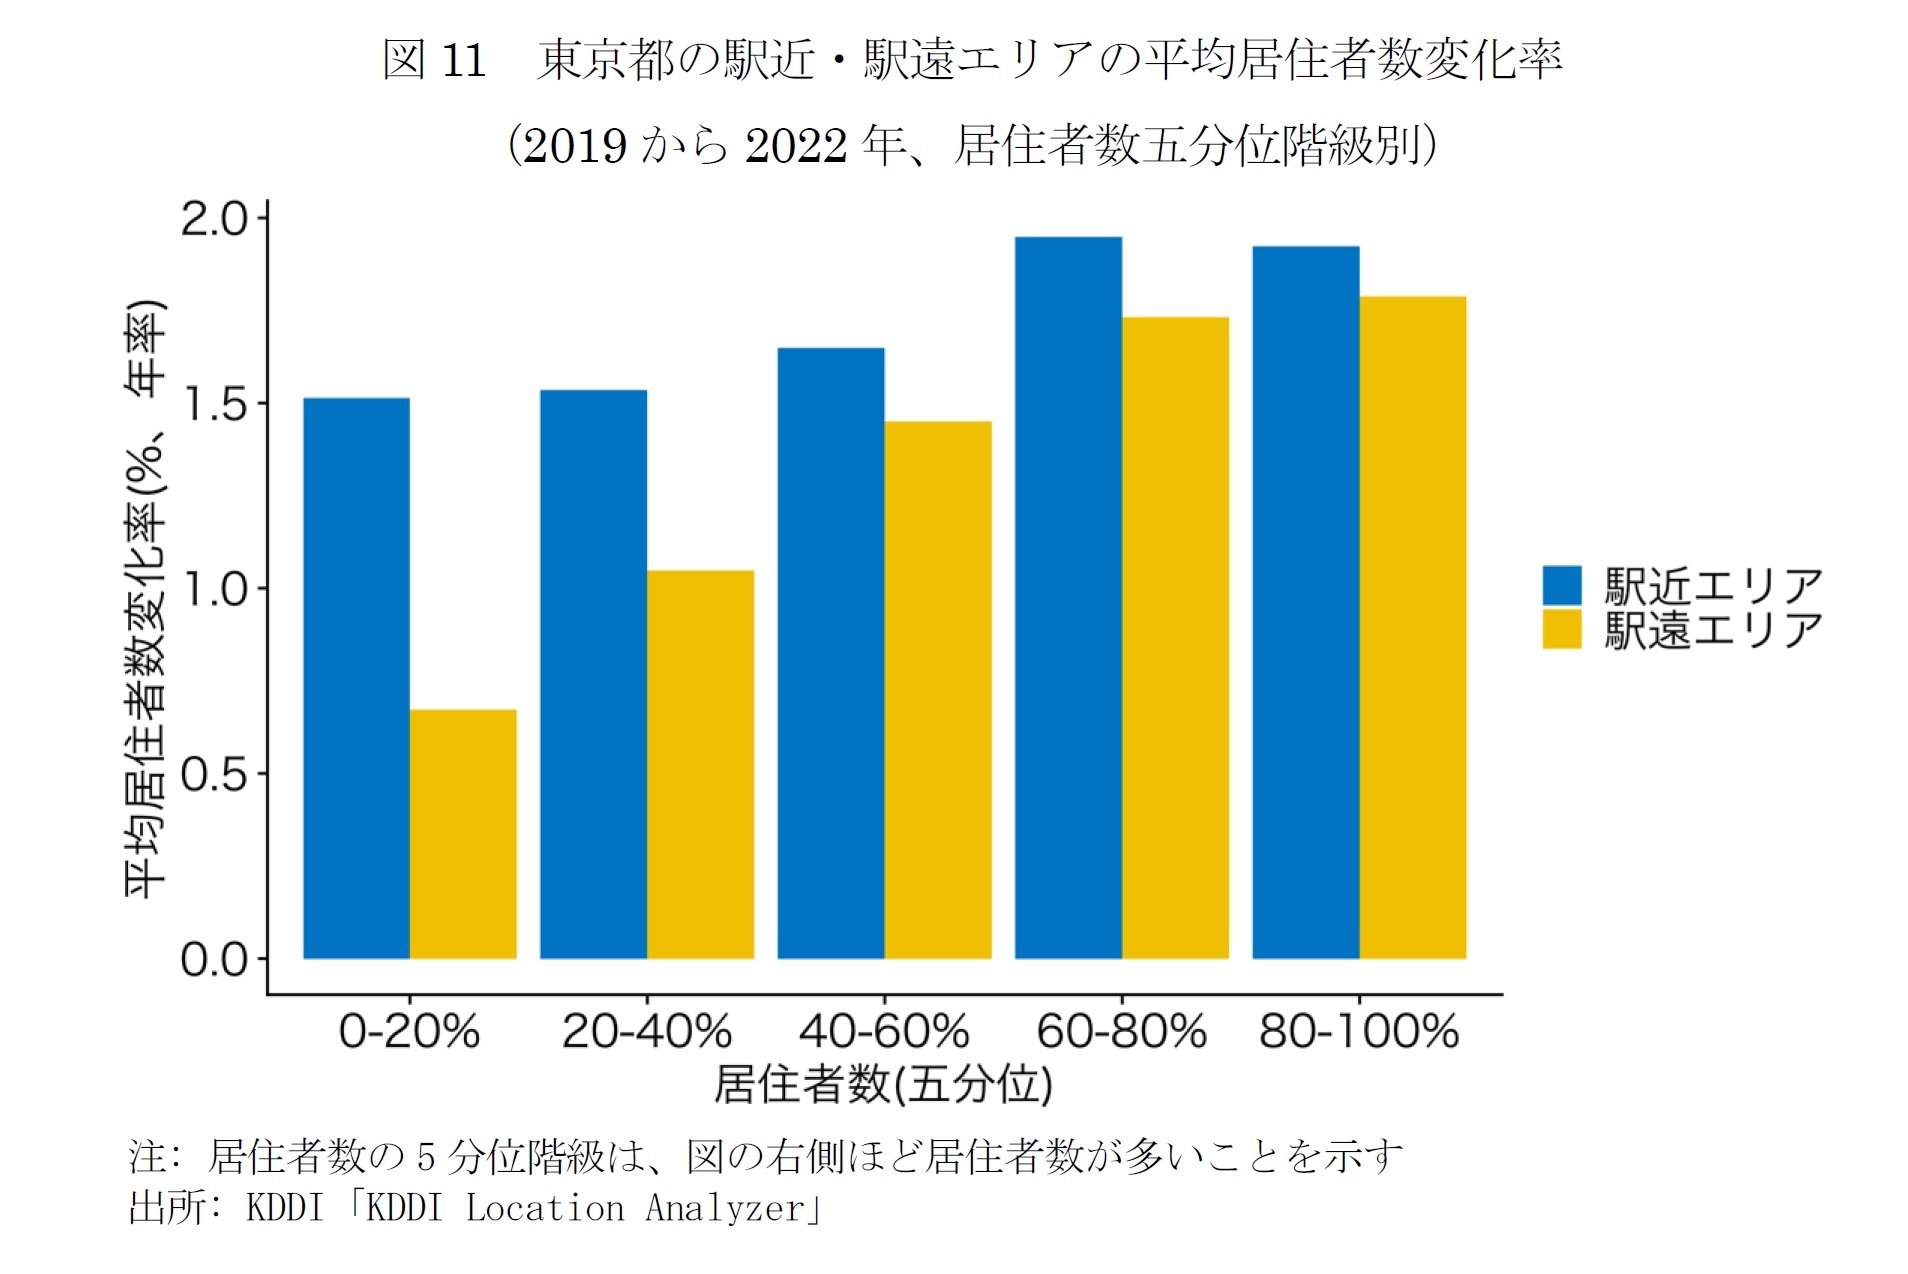 図11　東京都の駅近・駅遠エリアの平均居住者数変化率2019から2022年、居住者数五分位階級別）